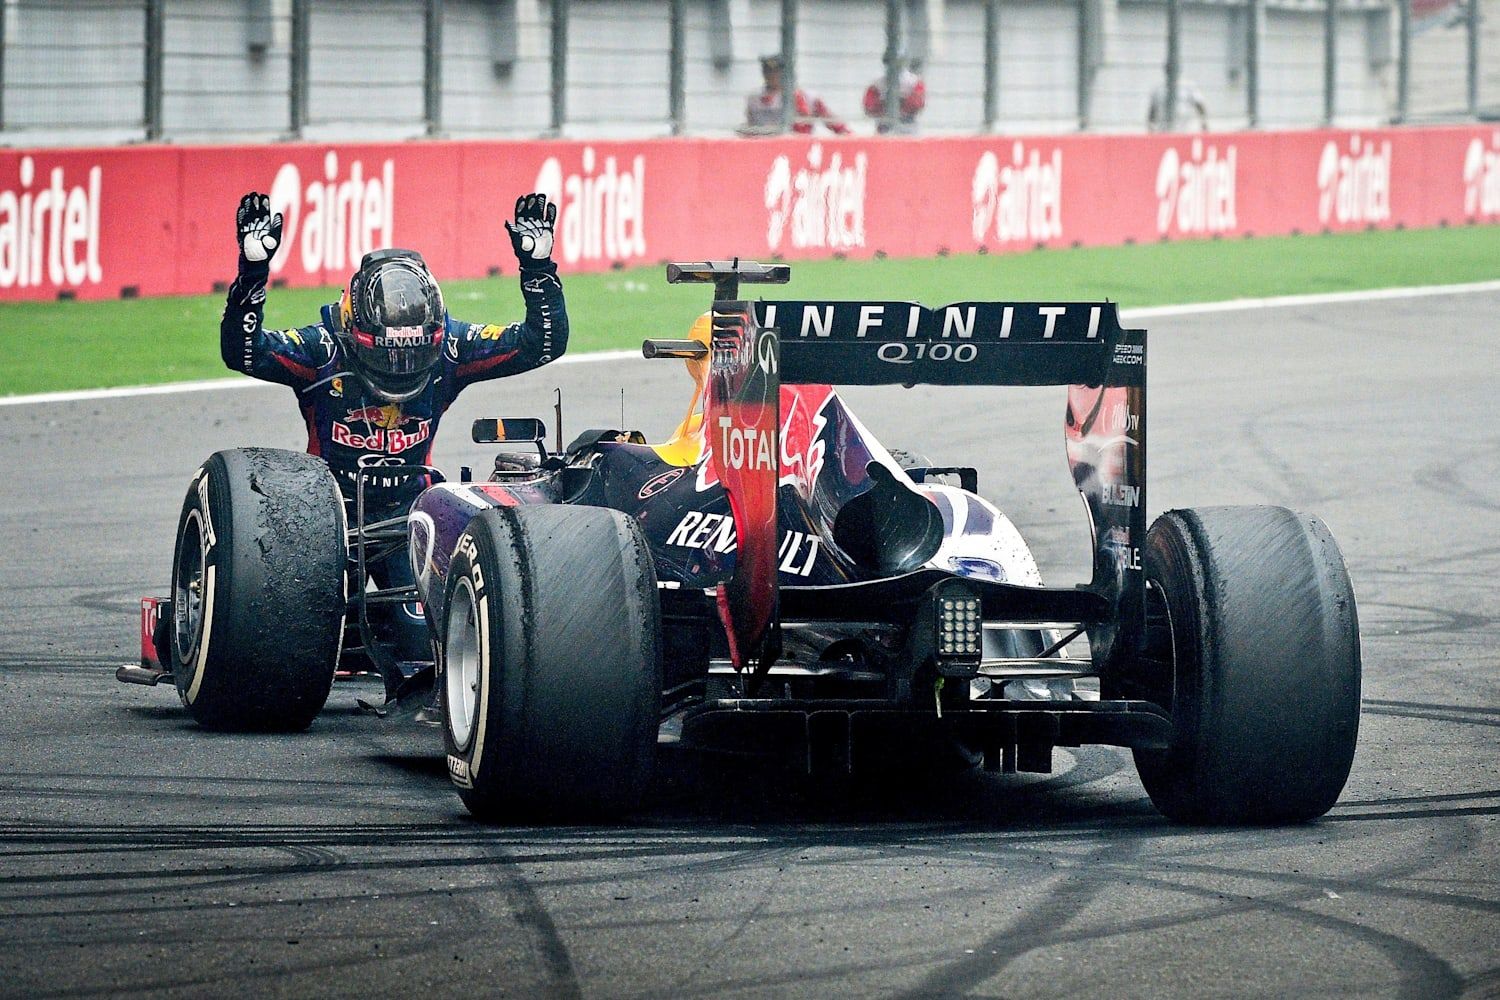 Best Photo from Sebastian Vettel's Victory